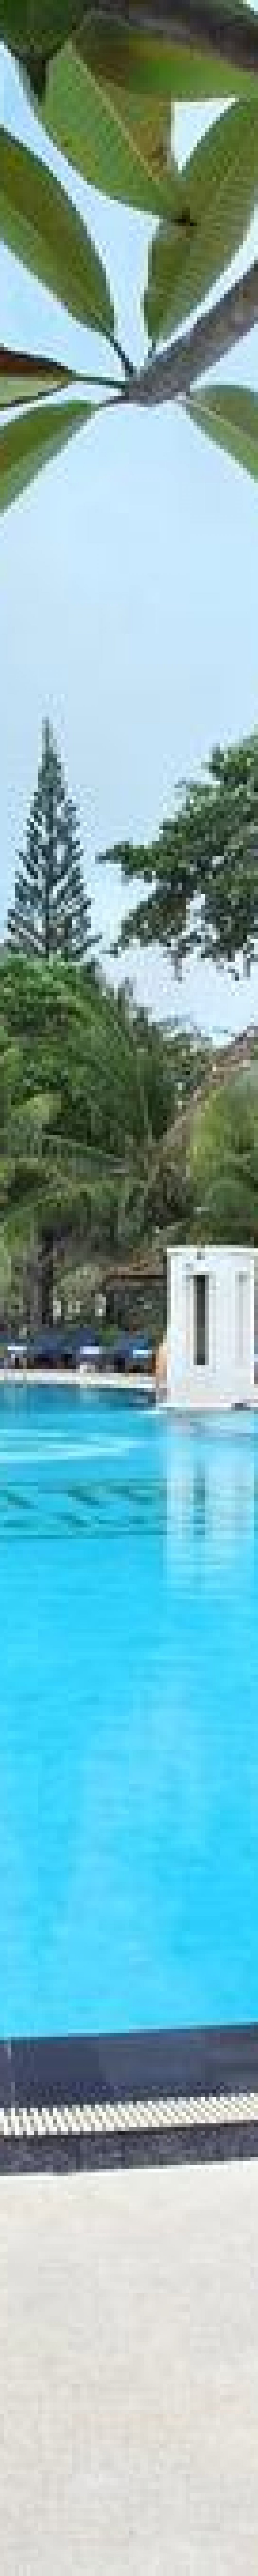 tanjung benoa resort bali tropic resort swimming pool bali tropic resort swimming pool